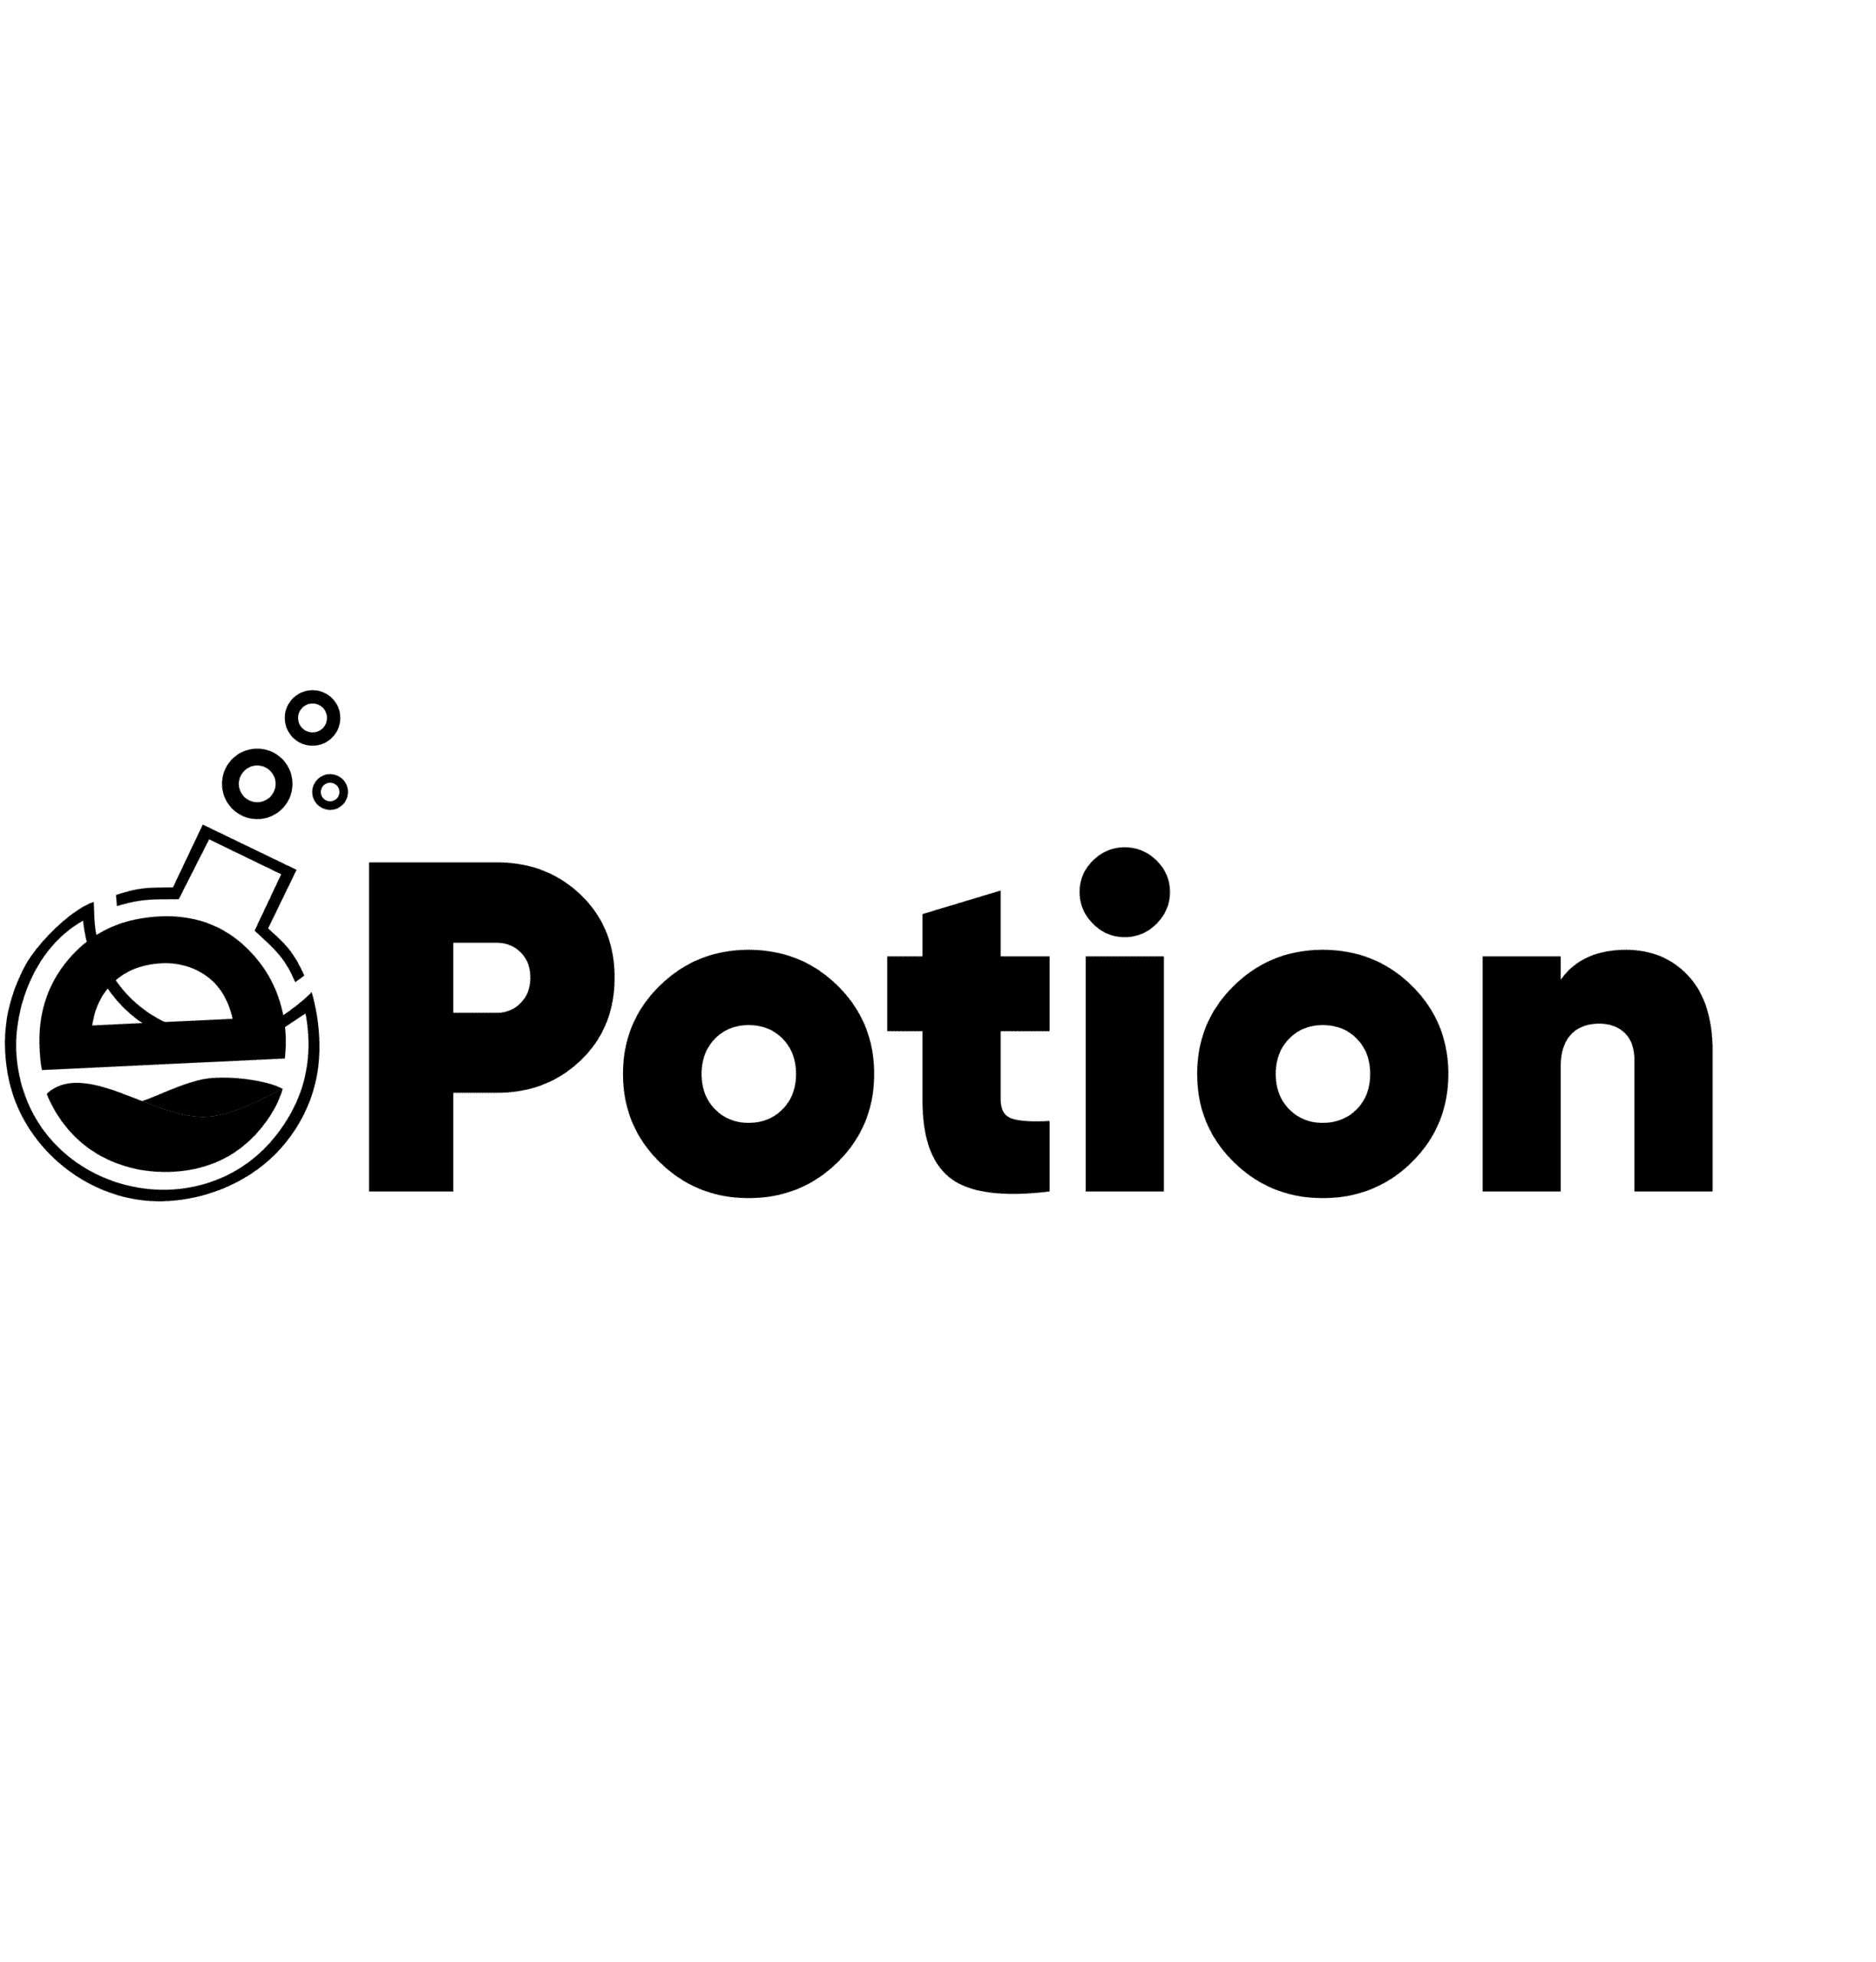 e-Potion